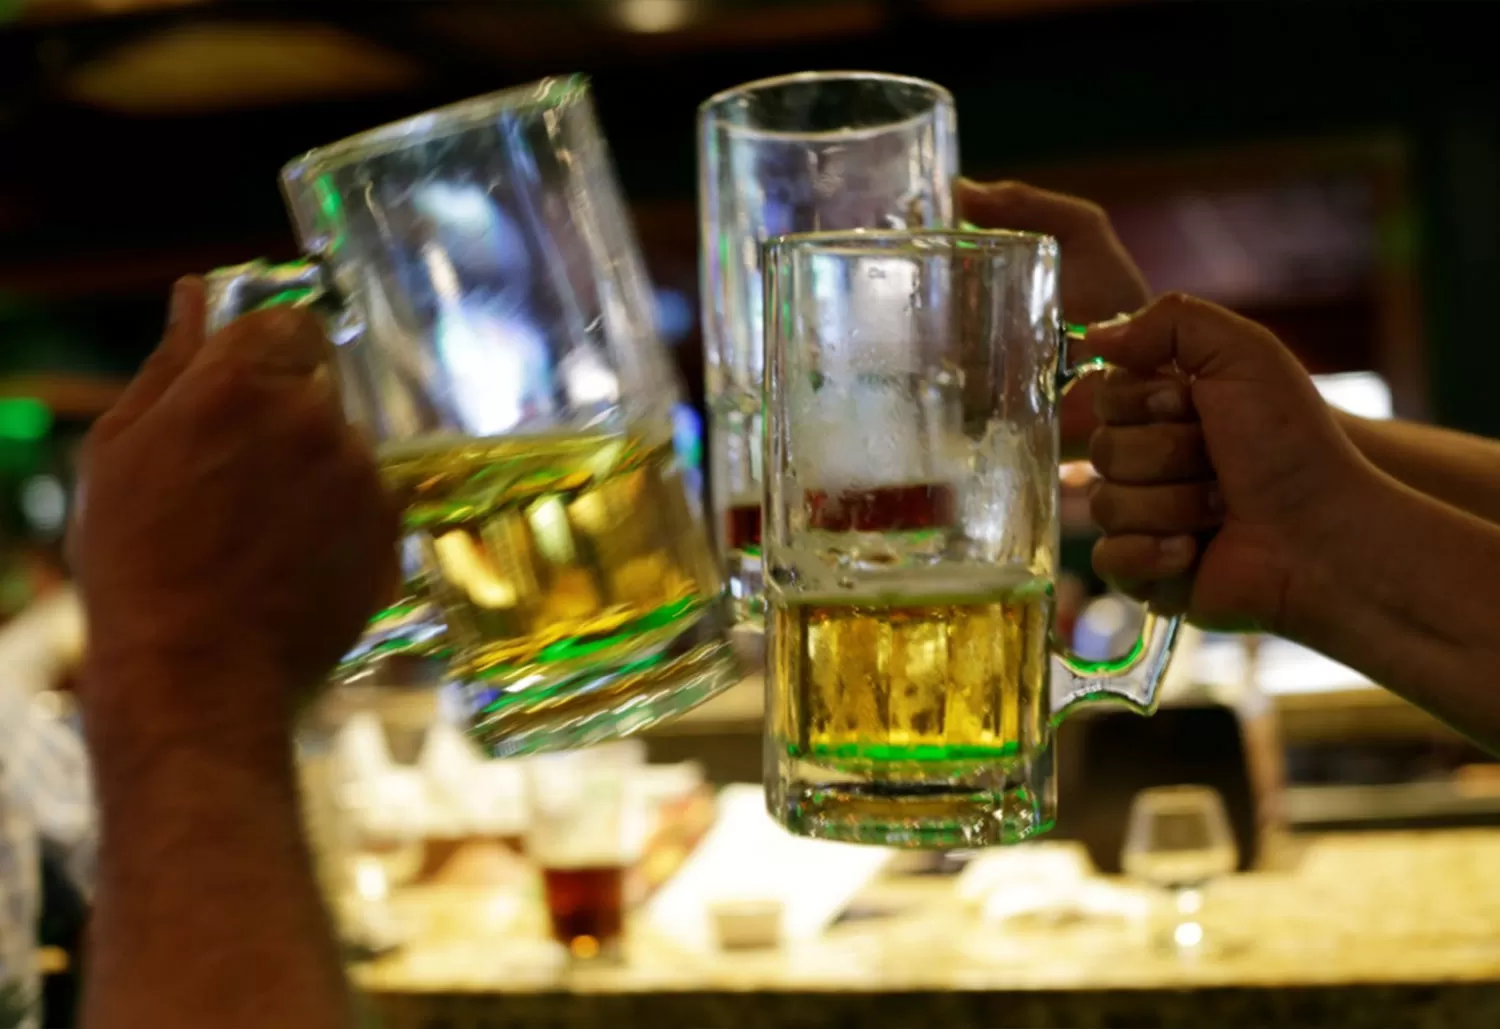 EN BUSCA DE LÍMITES. El consumo excesivo de alcohol es uno de los problemas más acuciantes en los jóvenes.